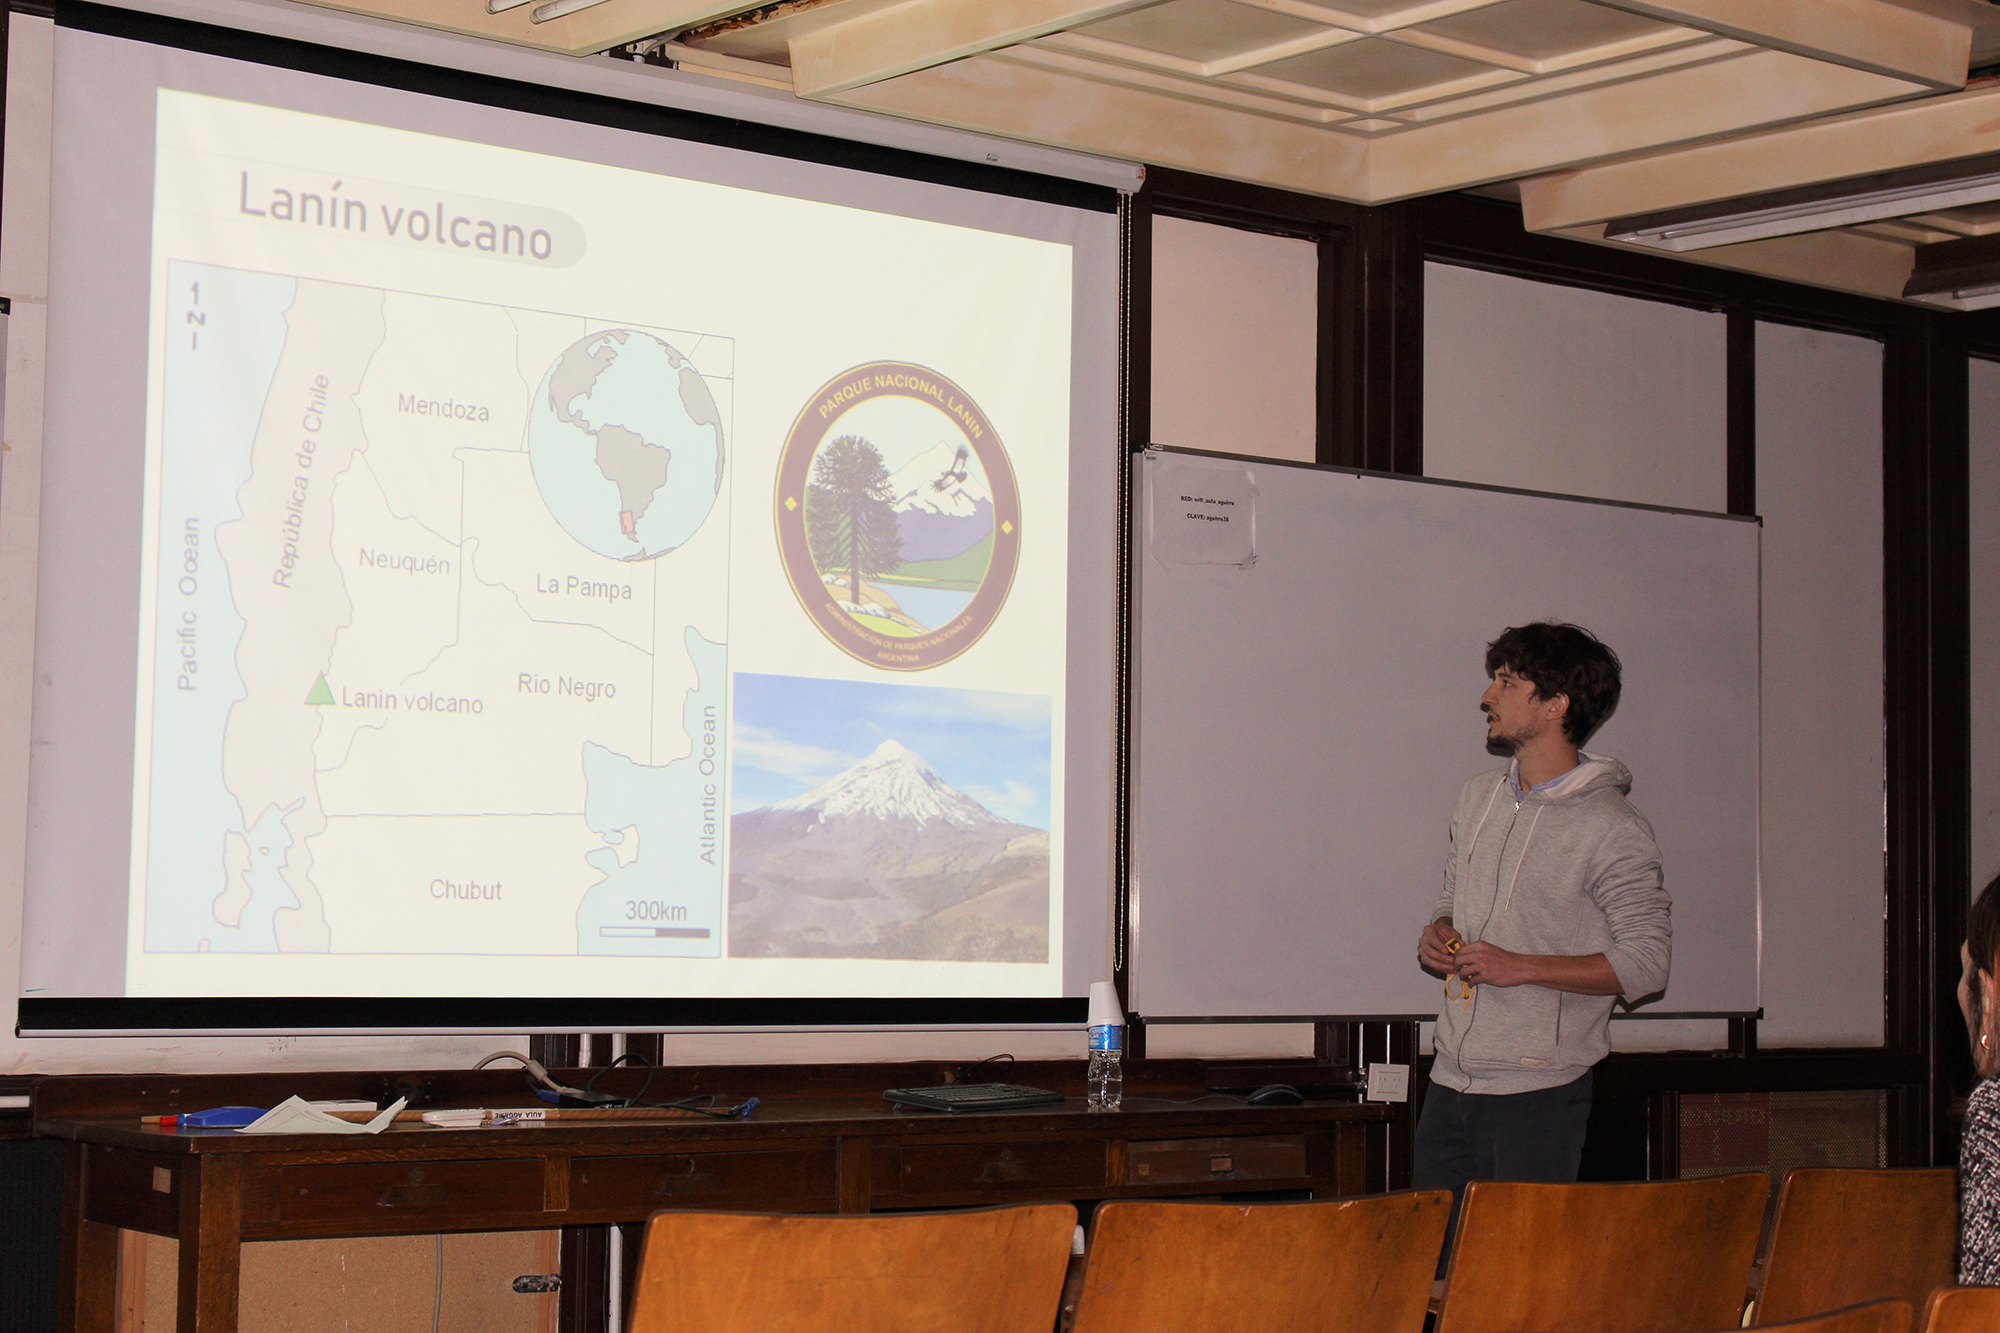 Tomas Fuentes präsentierte Wörner sein Promotionsprojekt zum argentinischen Vulkan Lanin